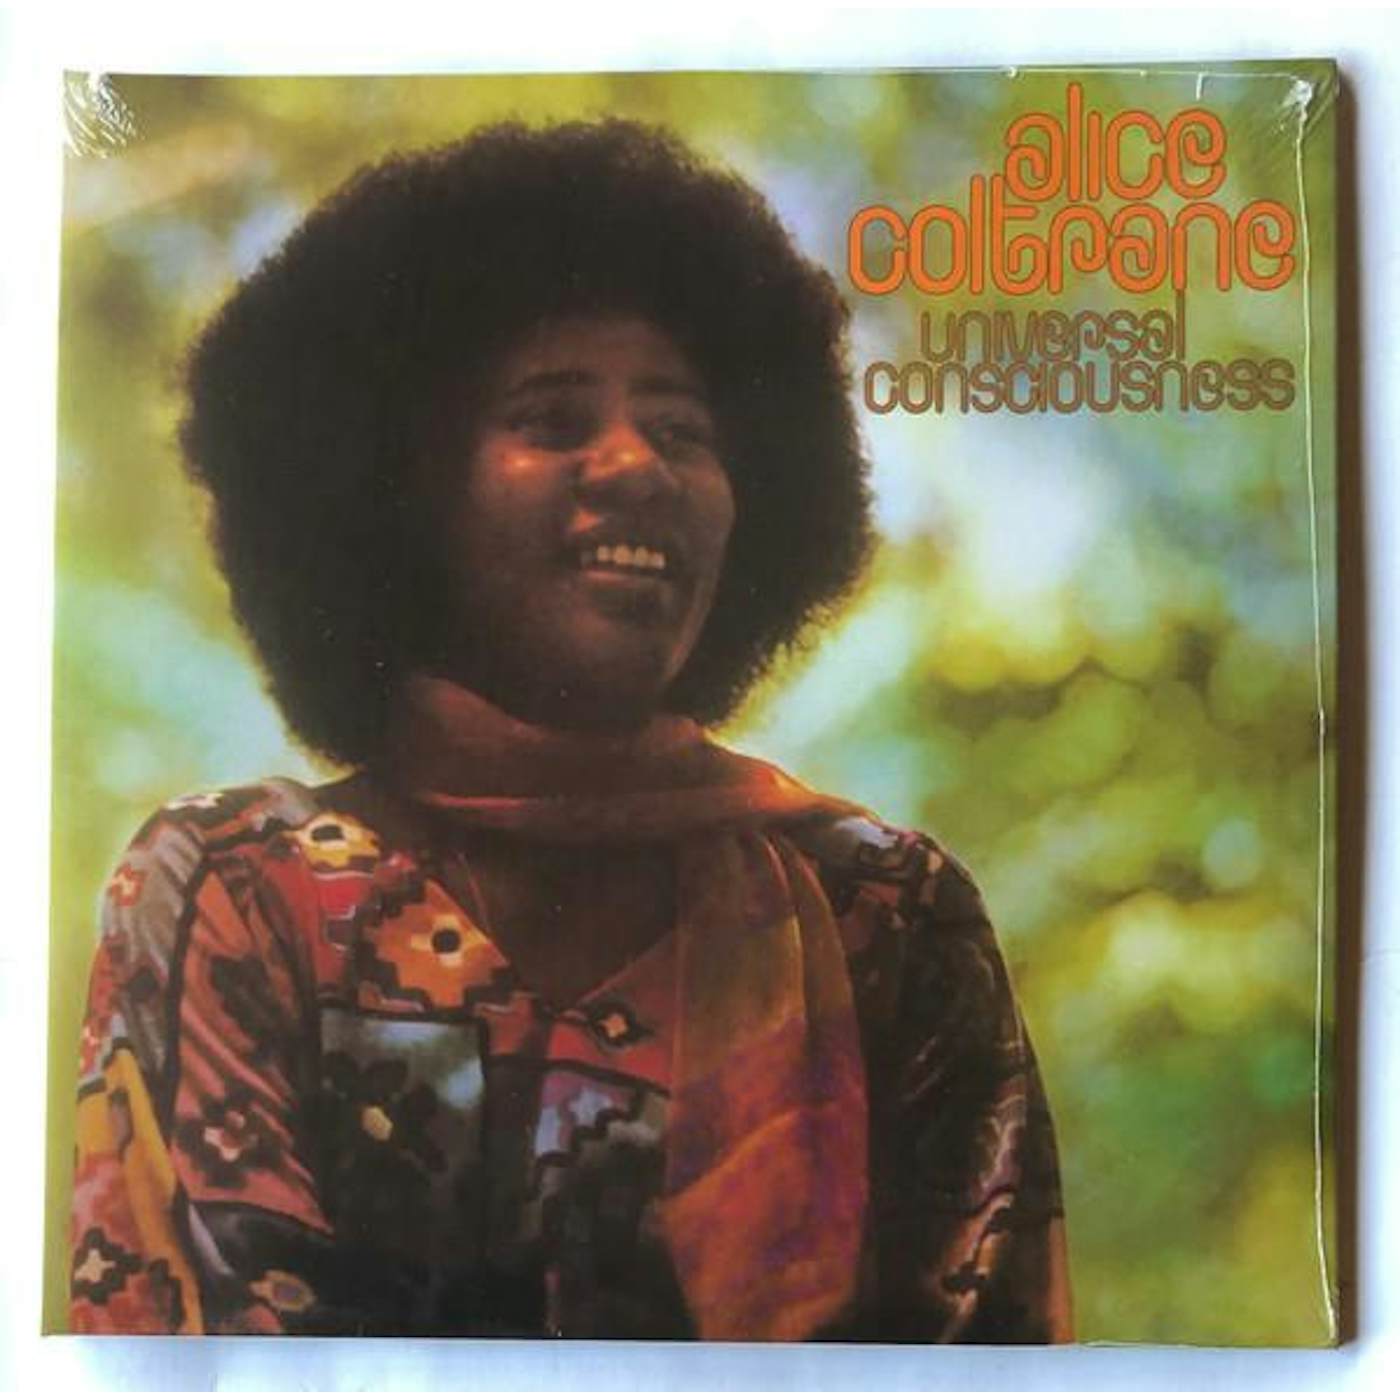 Alice Coltrane Universal Consciousness Vinyl Record